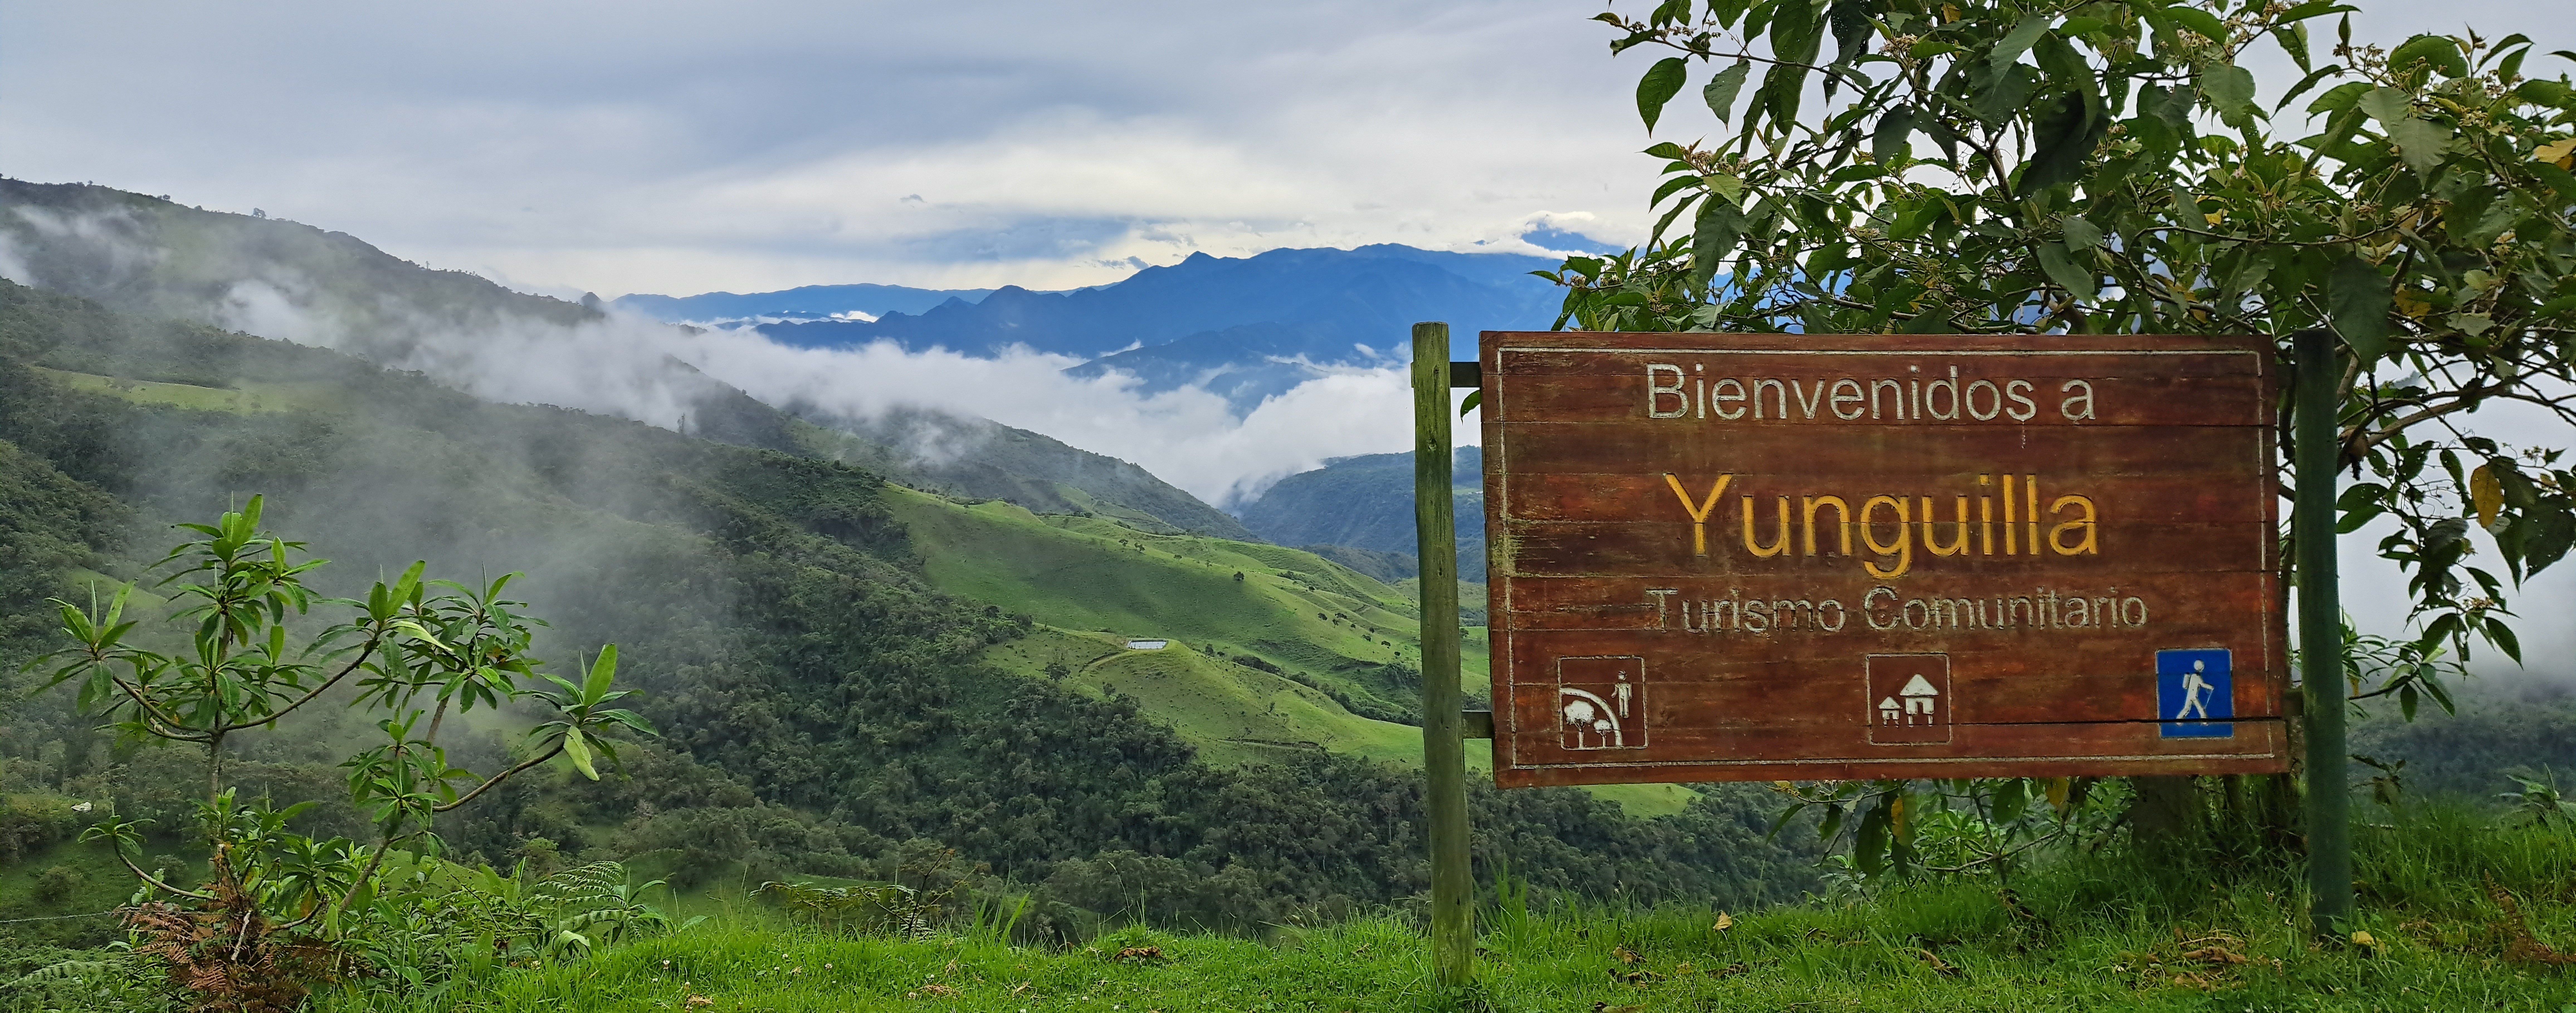 Community entrance Yunguilla Ecuador